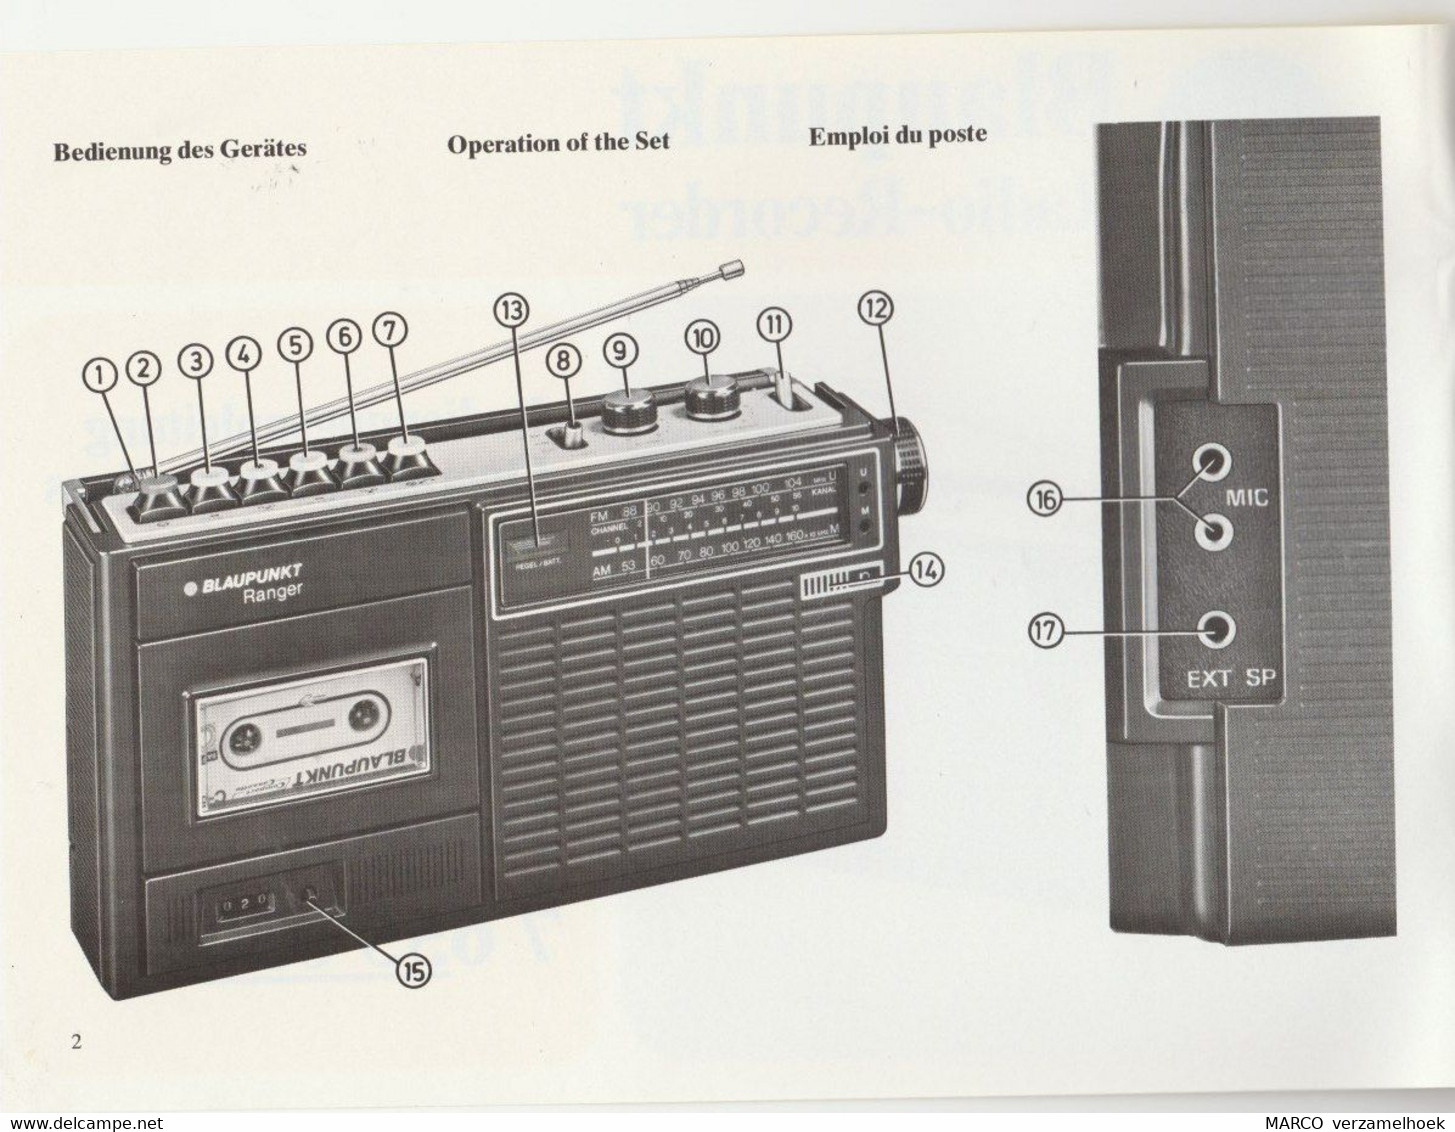 Handleiding-user Manual BLAUPUNKT Werke Gmbh Hildesheim (D) Ranger Radio-recorder 7 655 030 - Literatuur & Schema's